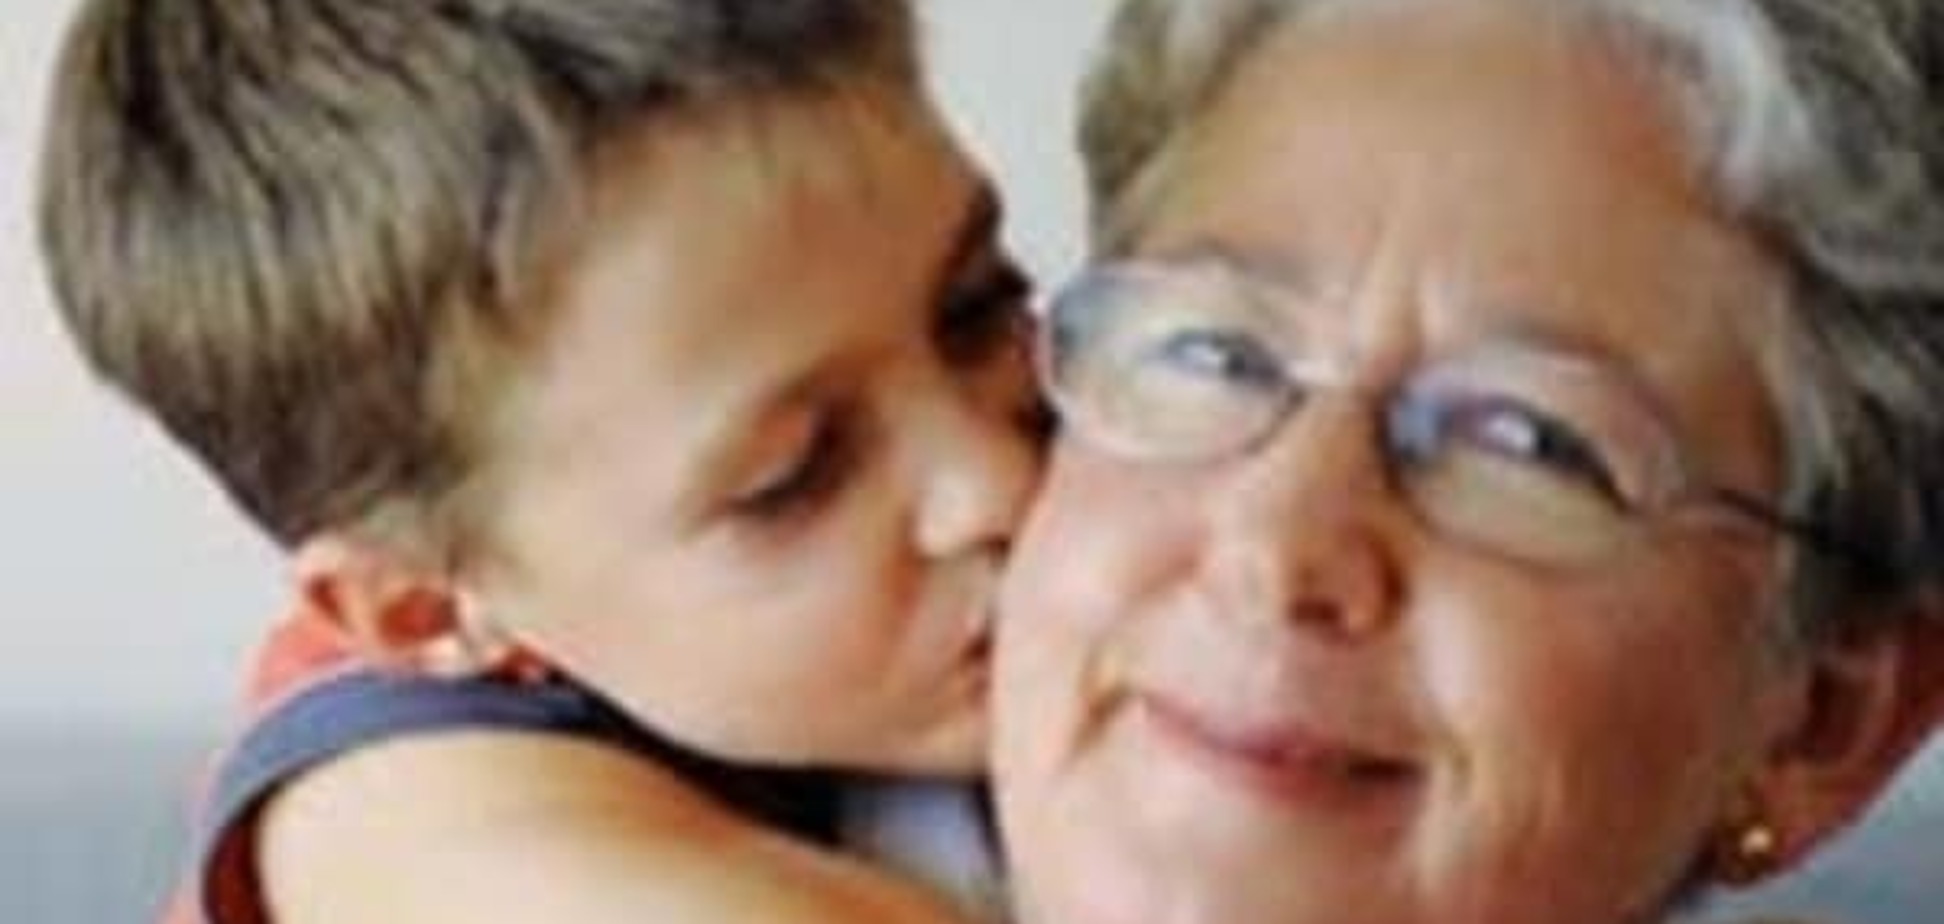 Бабушки и внуки: как правильно построить отношения